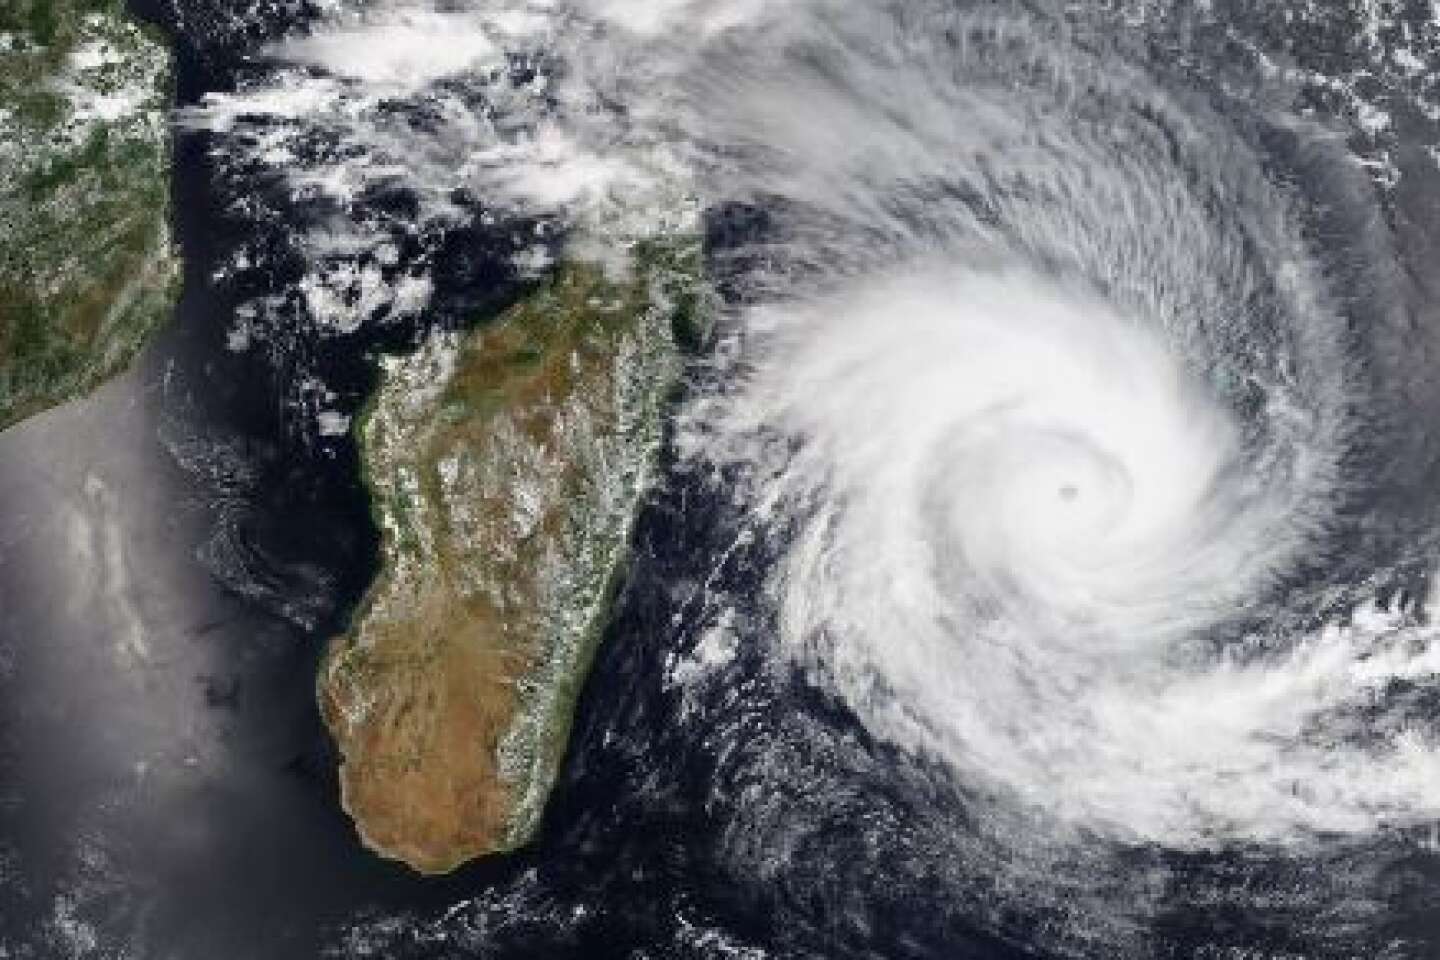 A Madagascar, onze morts dans le sillage d’un cyclone